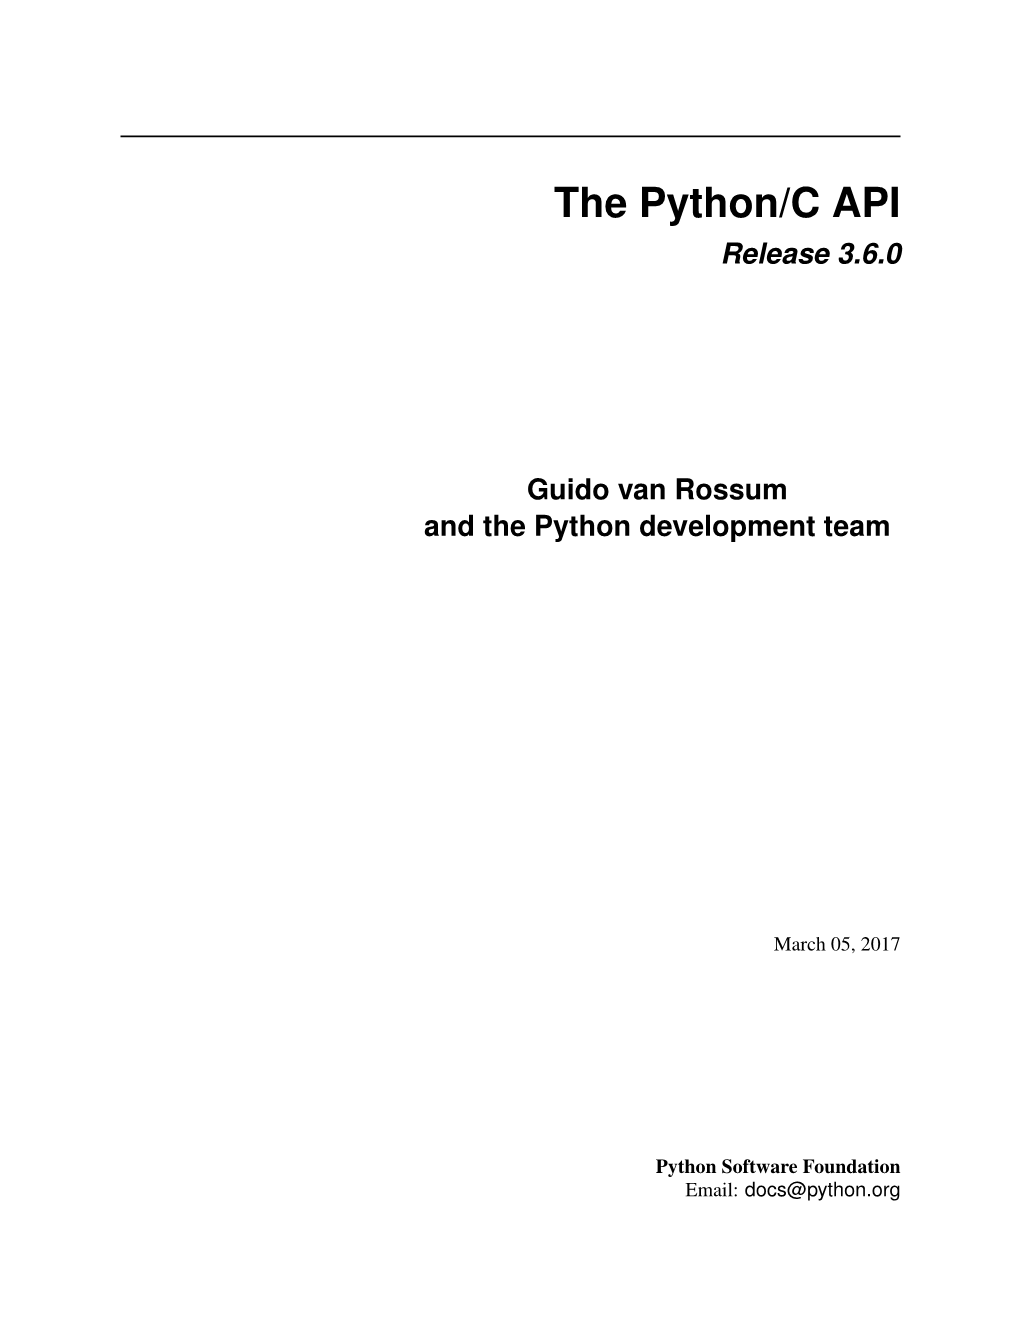 The Python/C API Release 3.6.0